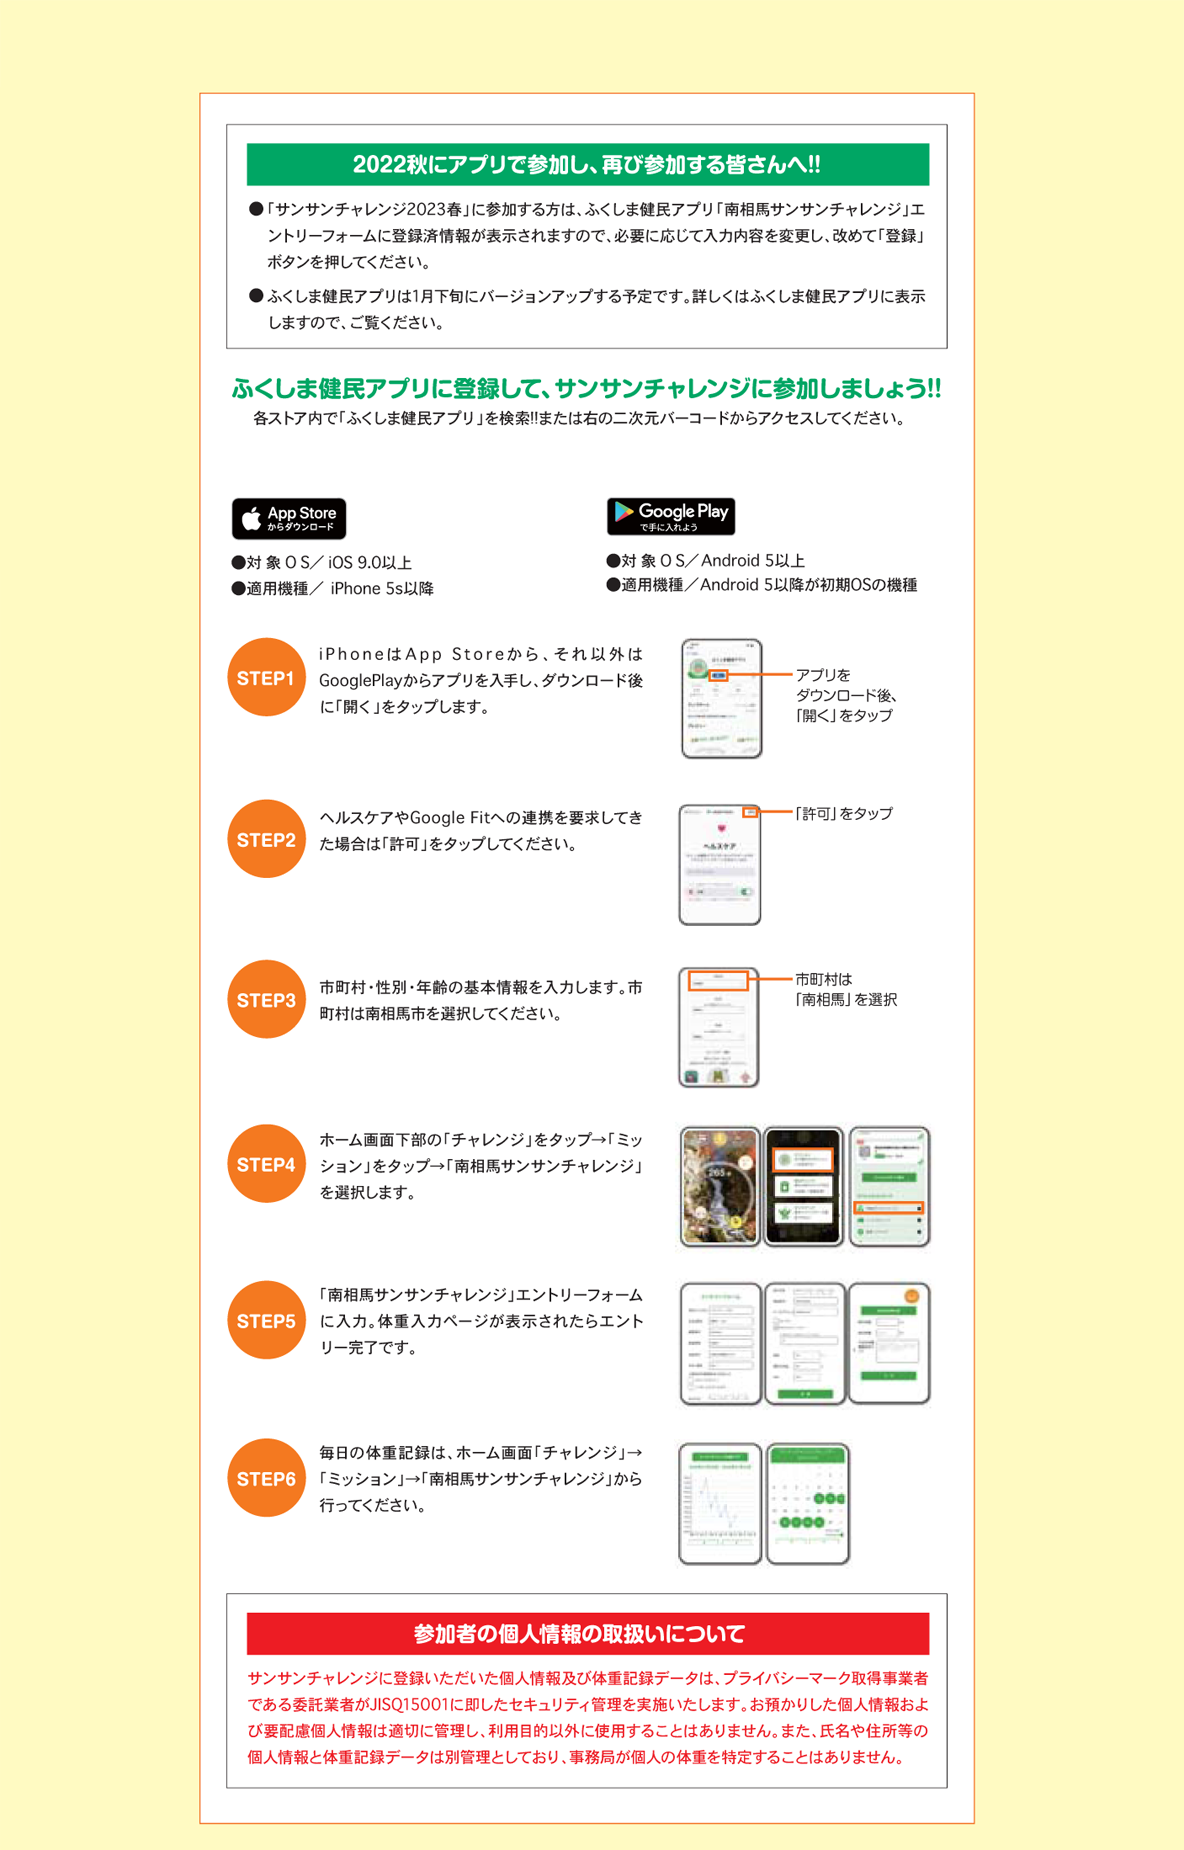 ふくしま県民アプリ参加方法